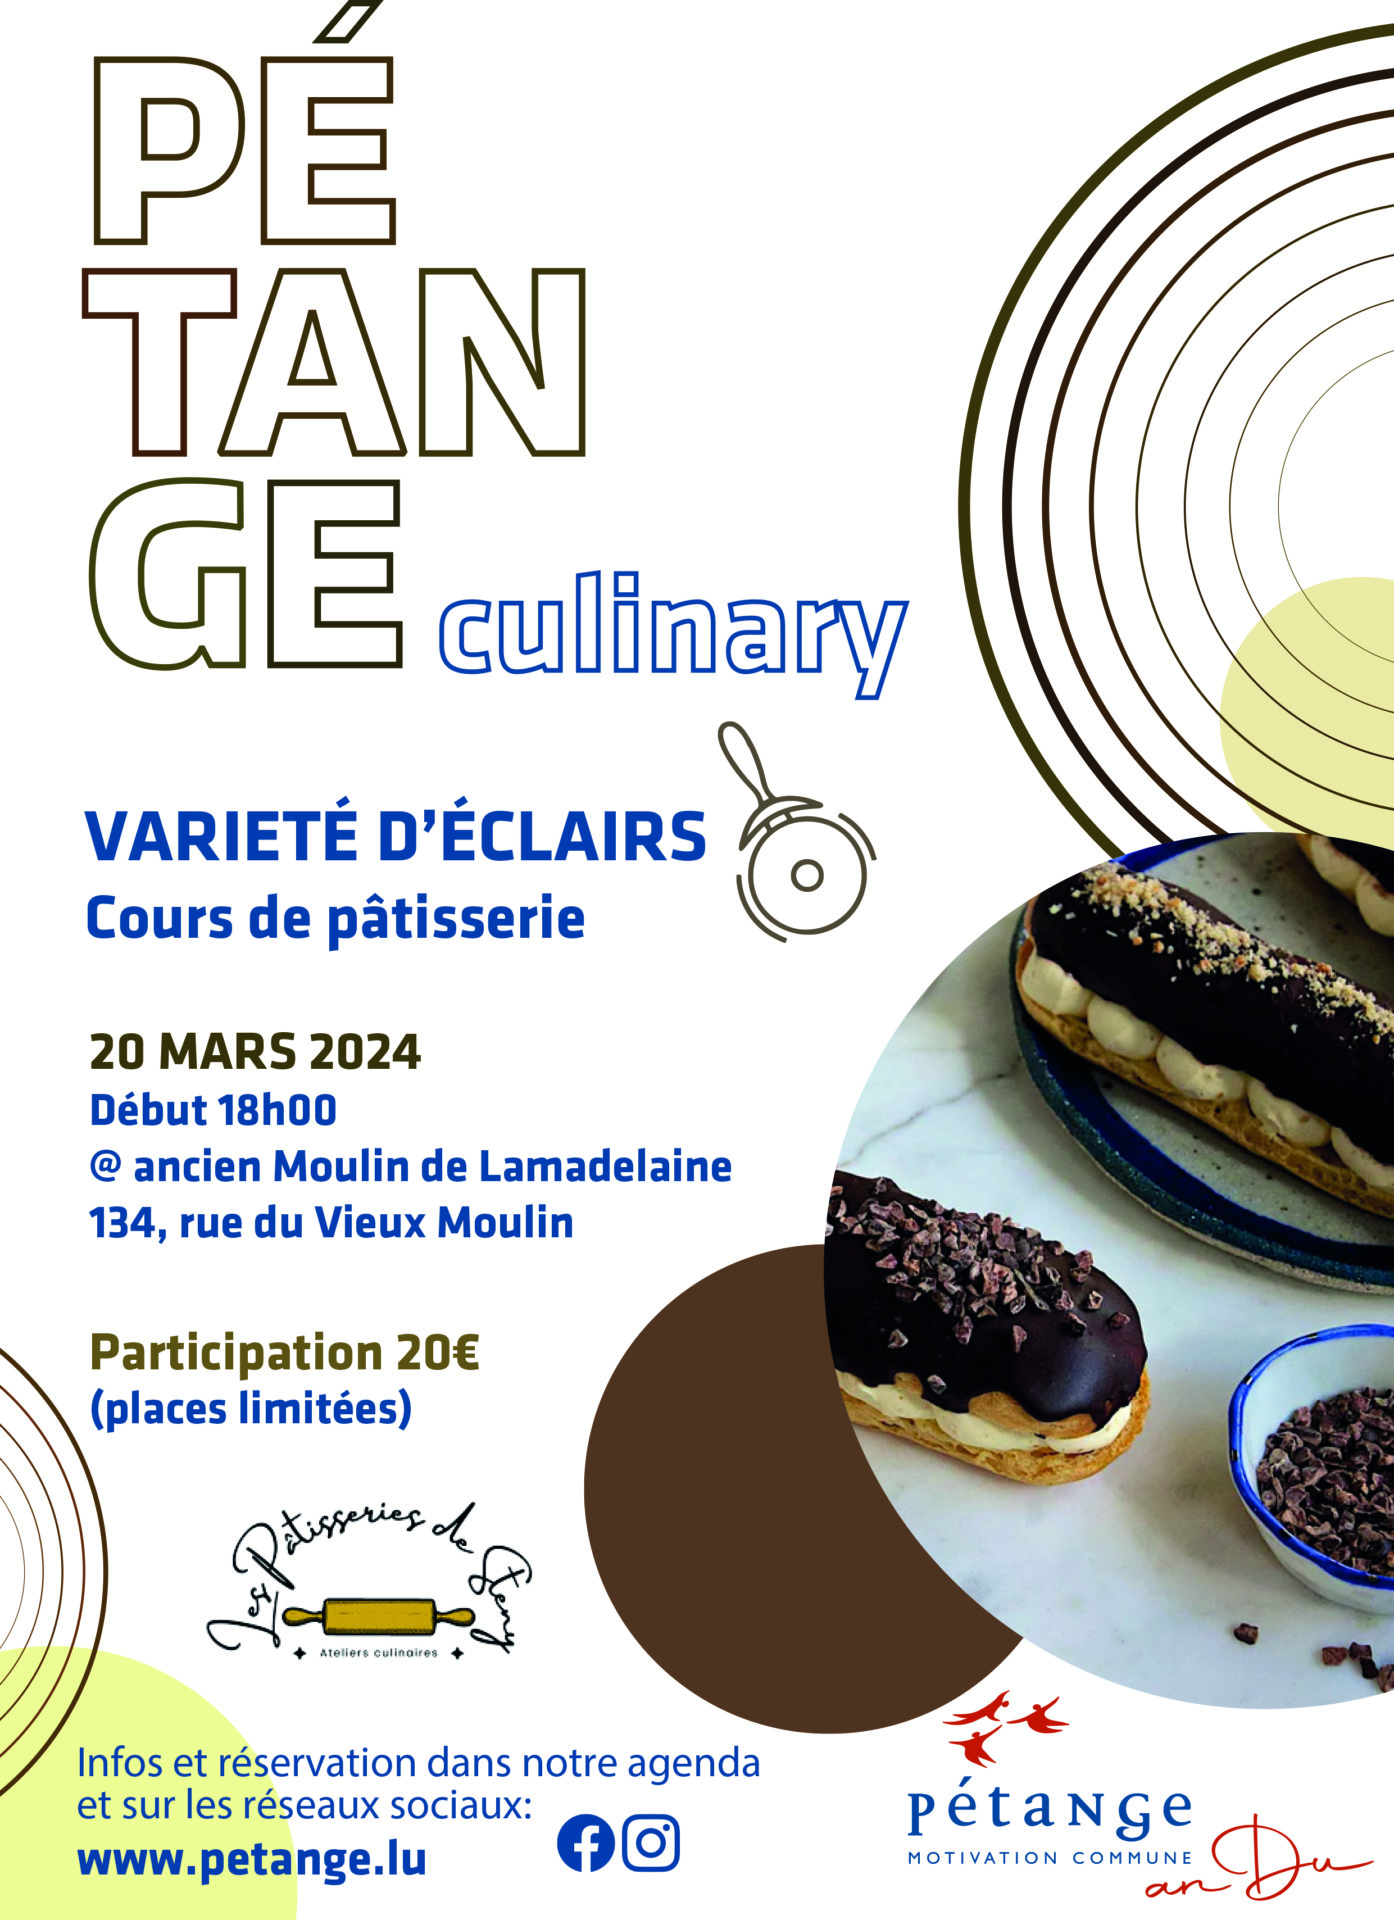 Petange Culinary & Cours de pâtisserie - SOLD out